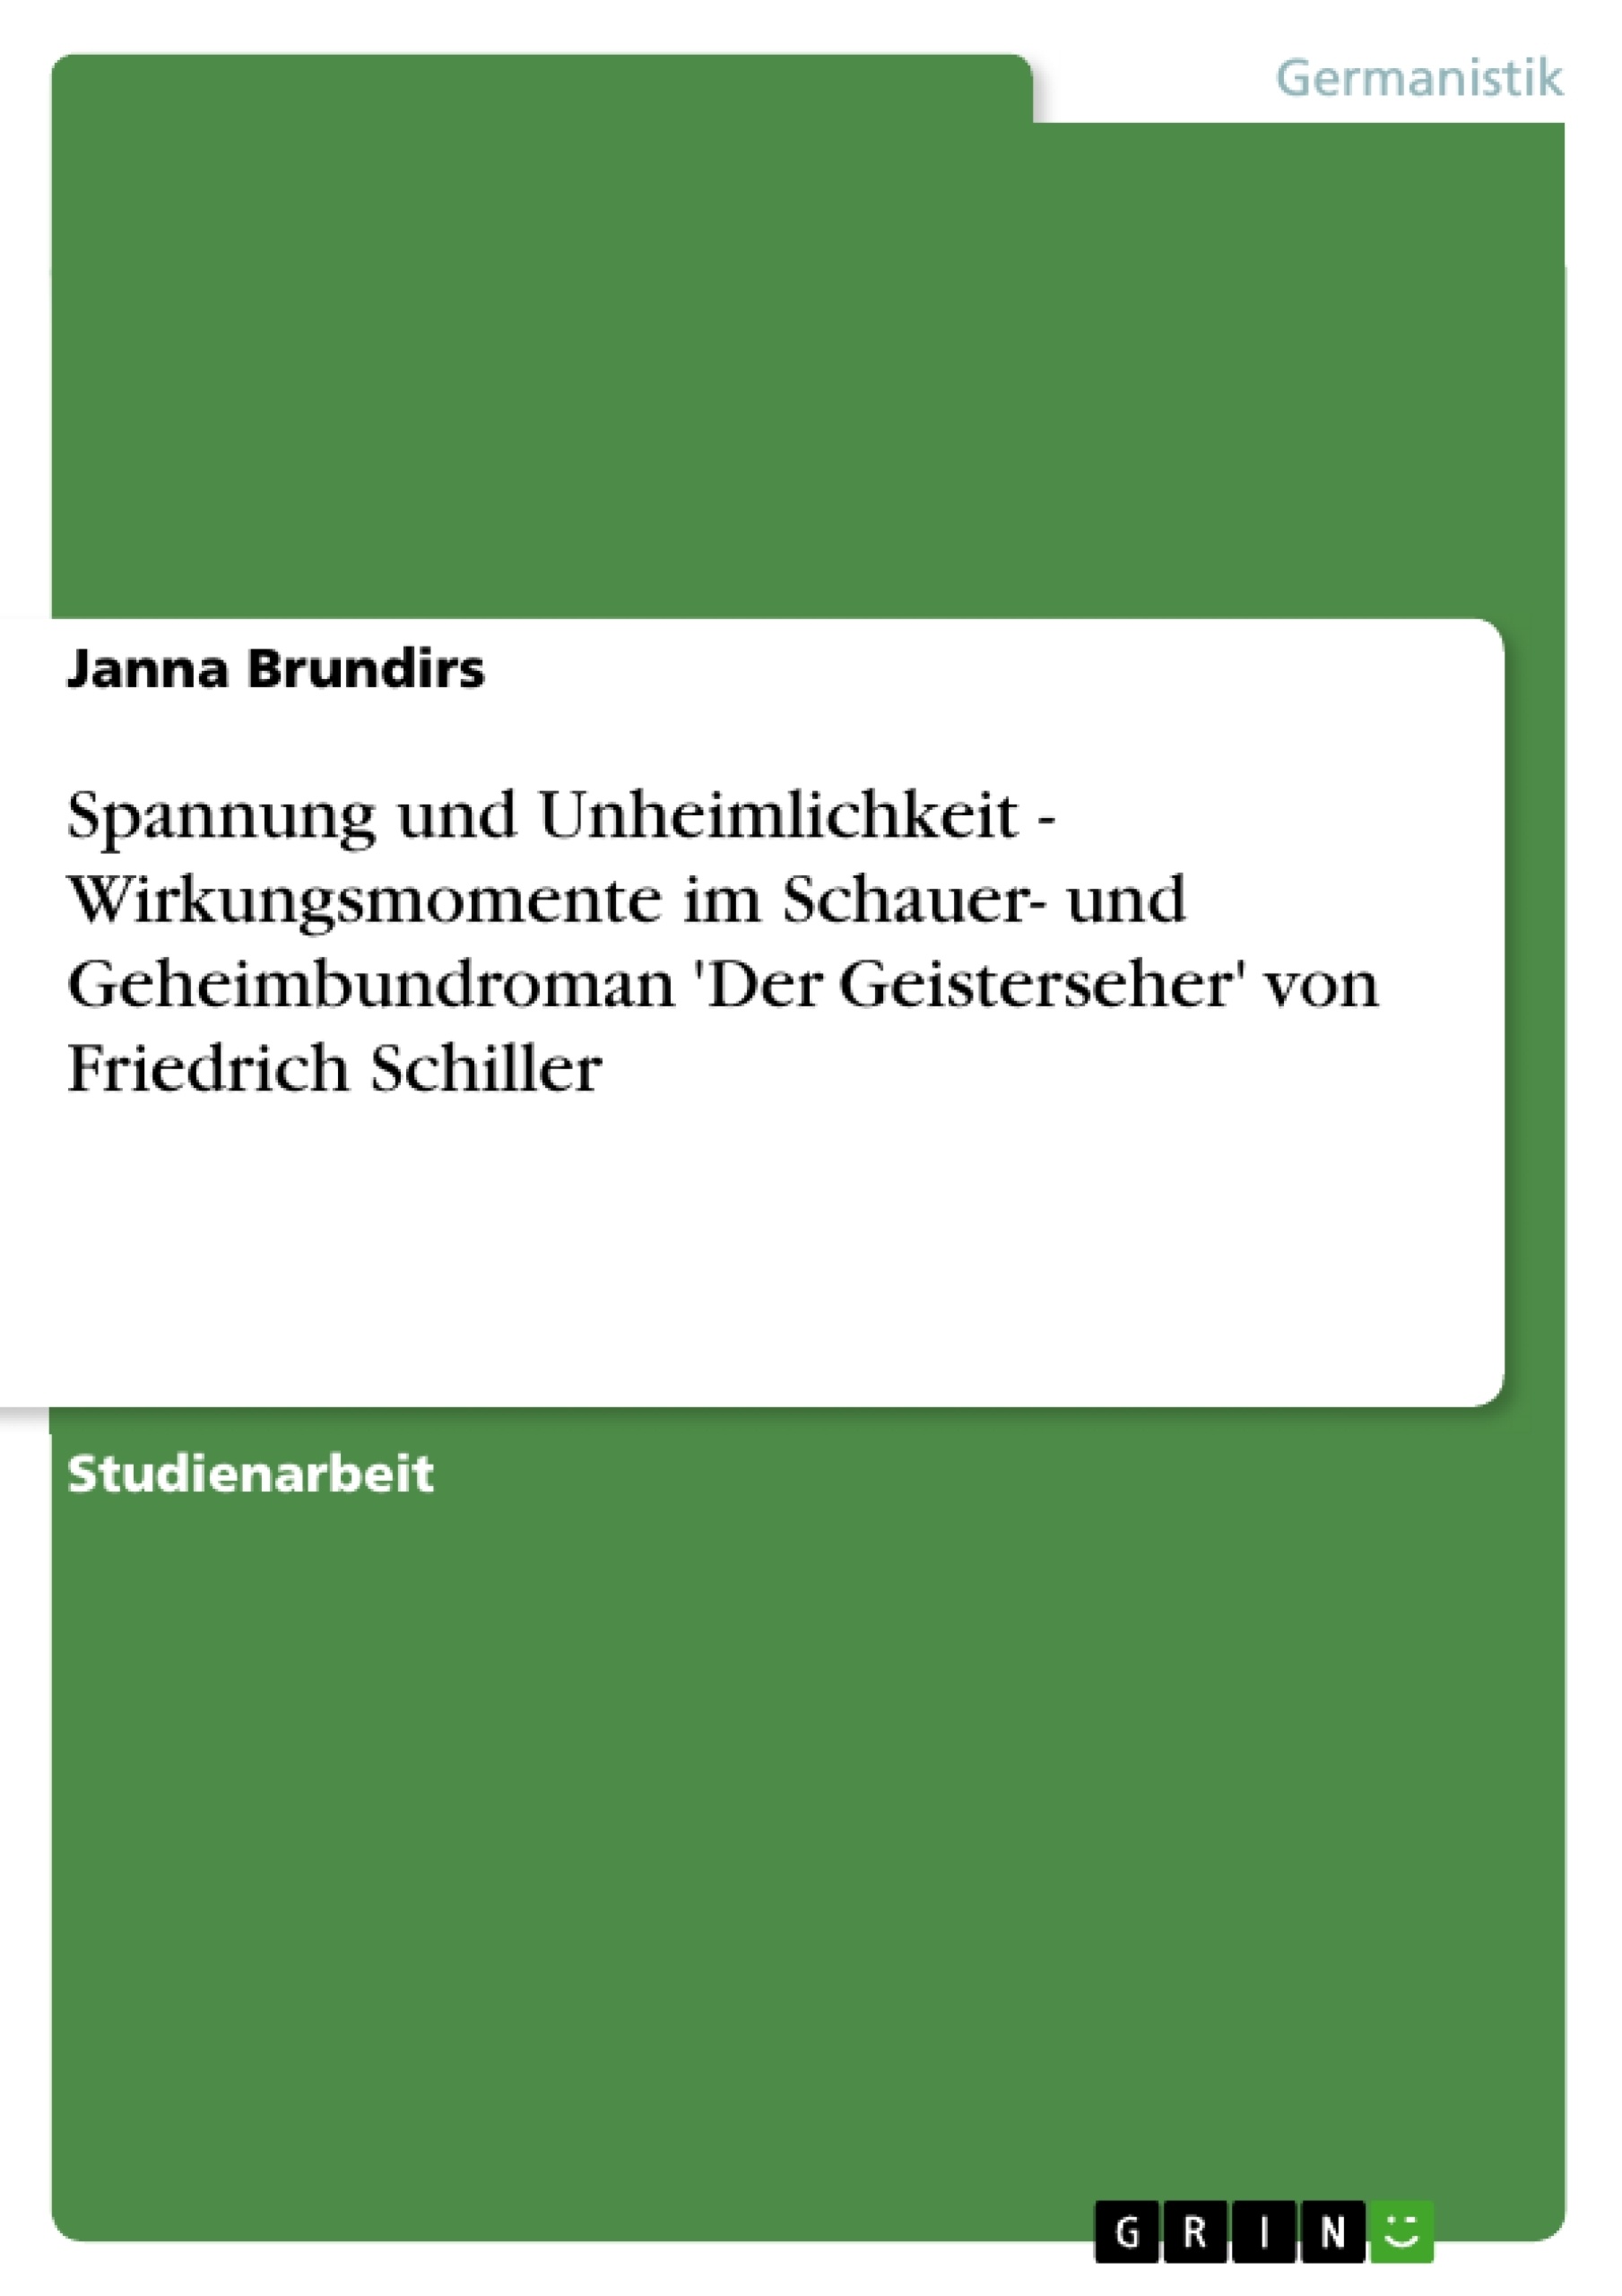 Title: Spannung und Unheimlichkeit - Wirkungsmomente im Schauer- und Geheimbundroman 'Der Geisterseher' von Friedrich Schiller